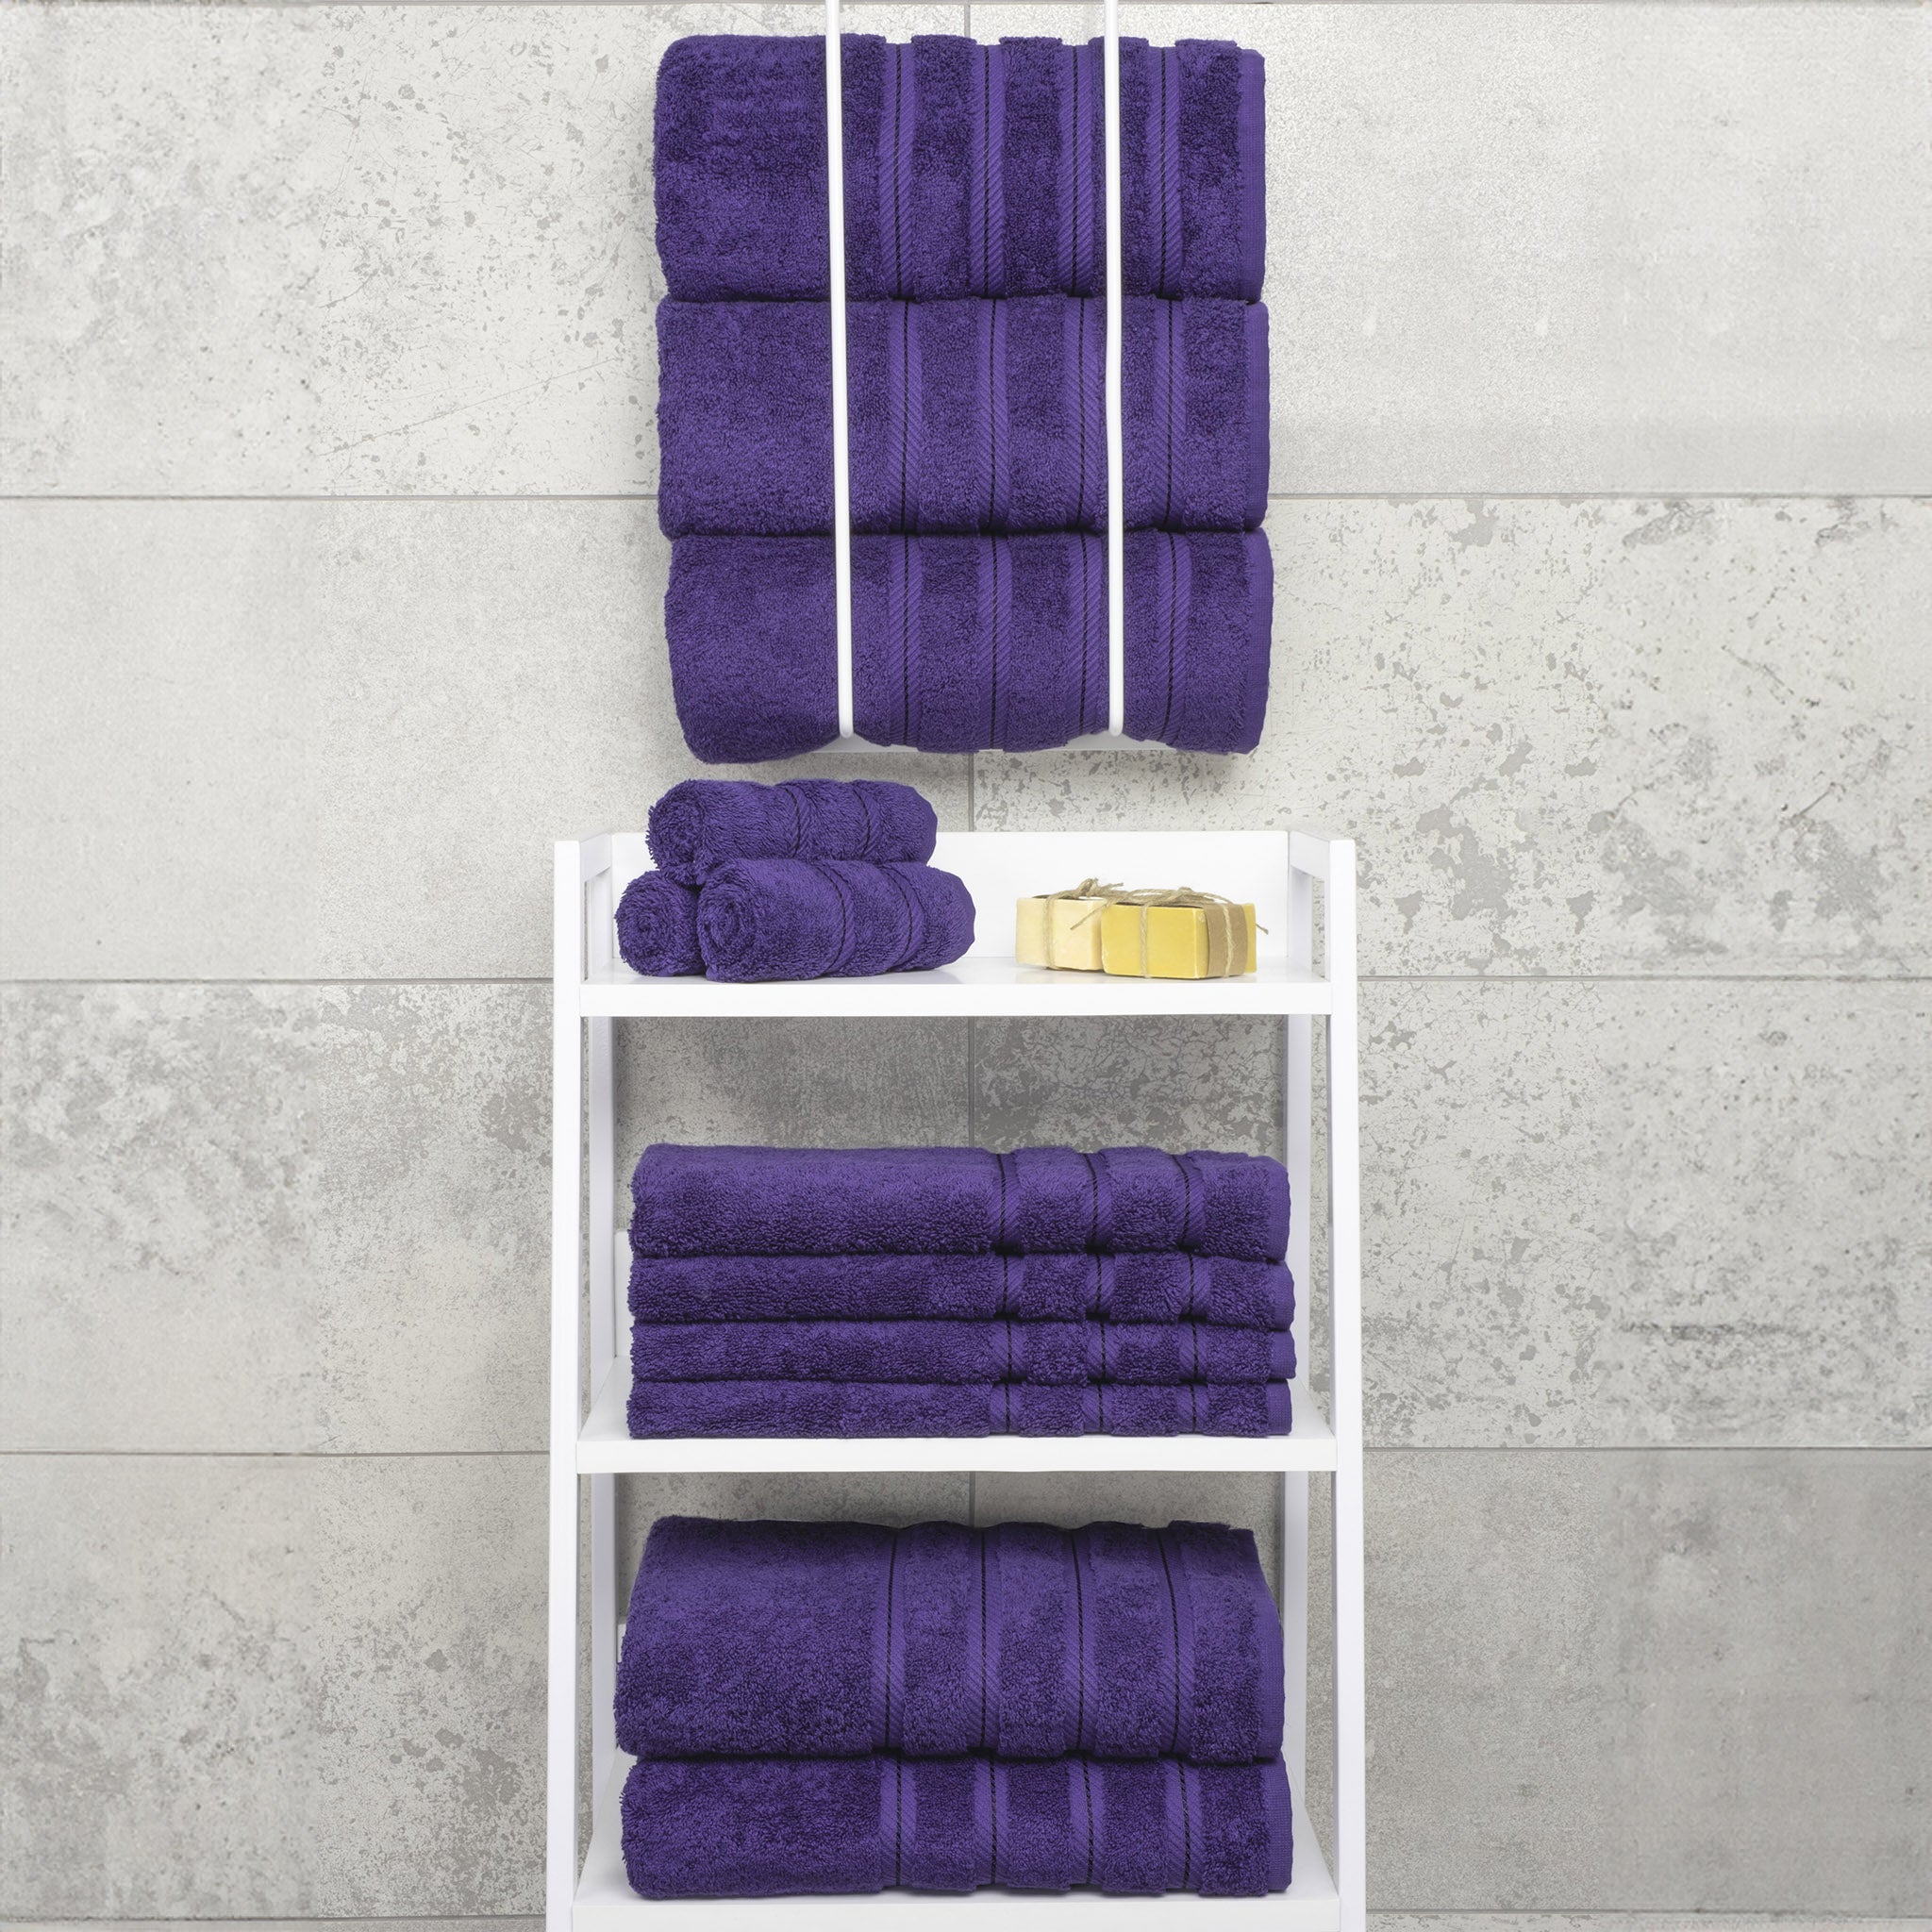 American Soft Linen 100% Turkish Cotton 4 Pack Bath Towel Set Wholesale purple-7